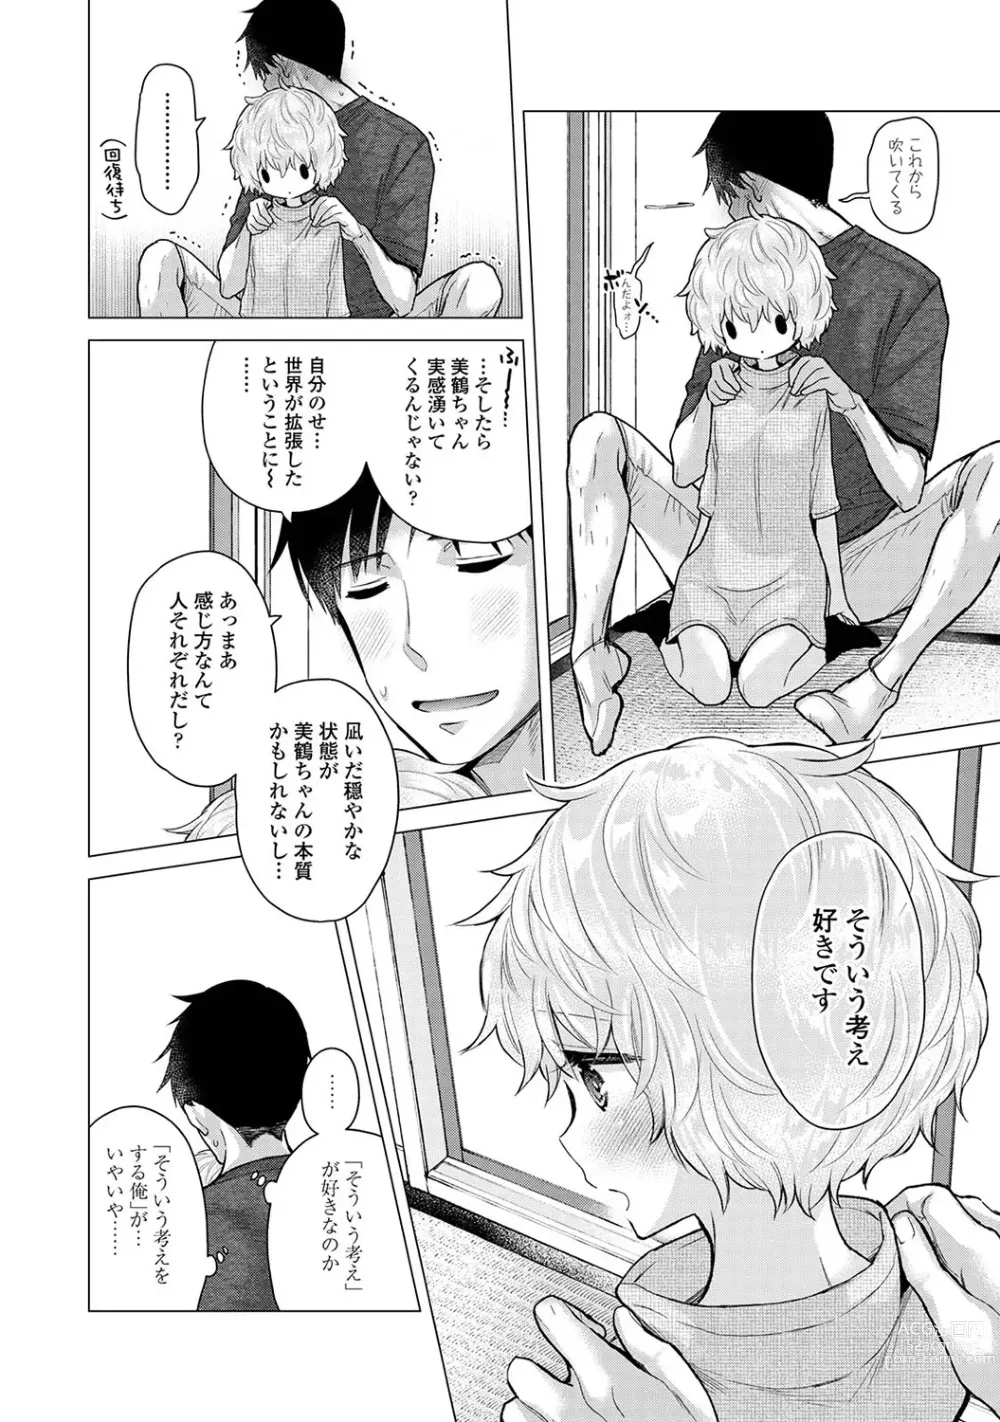 Page 12 of manga COMIC Ananga-Ranga Vol 102